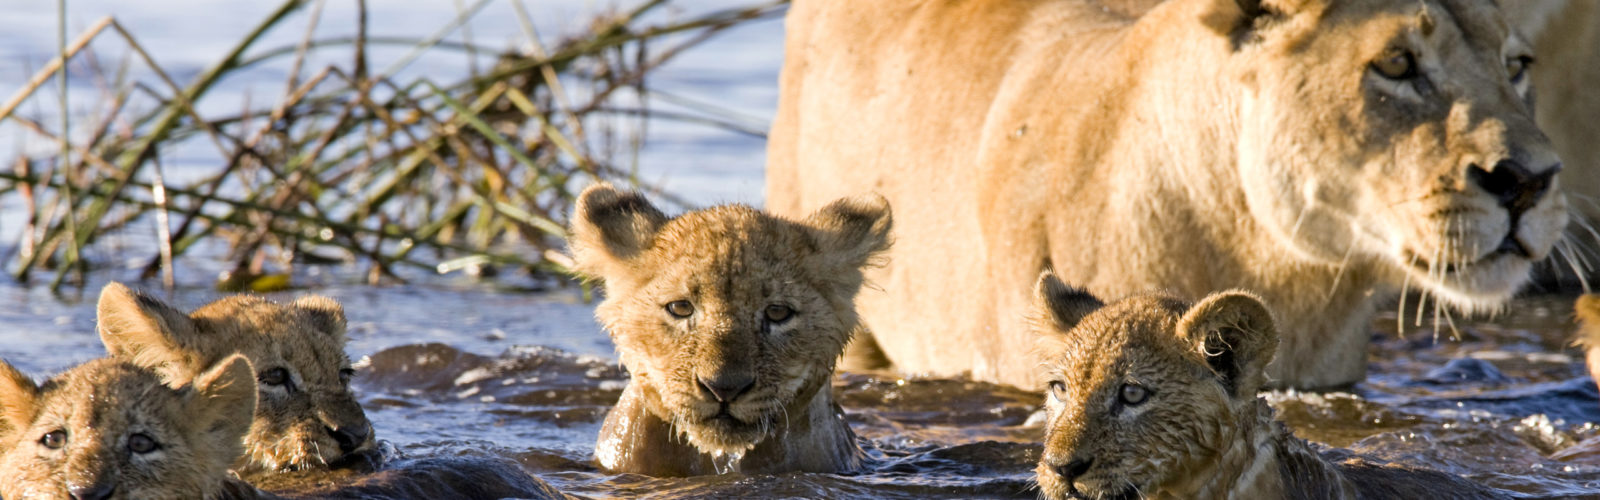 Lion cubs, safari, Africa